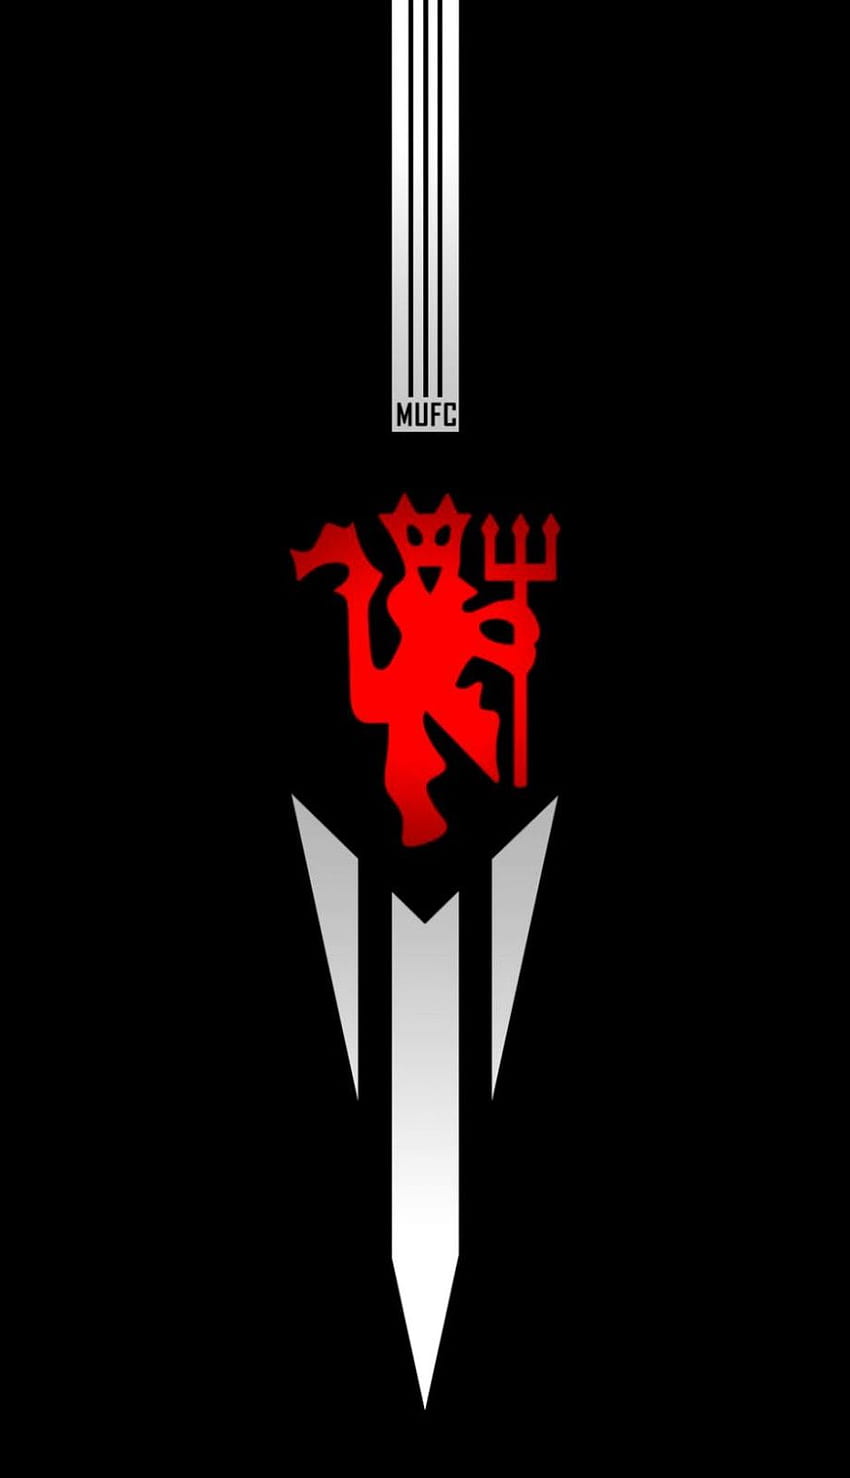 Papéis de parede 3D do logotipo do Manchester United Red Devils Papel de parede de celular HD